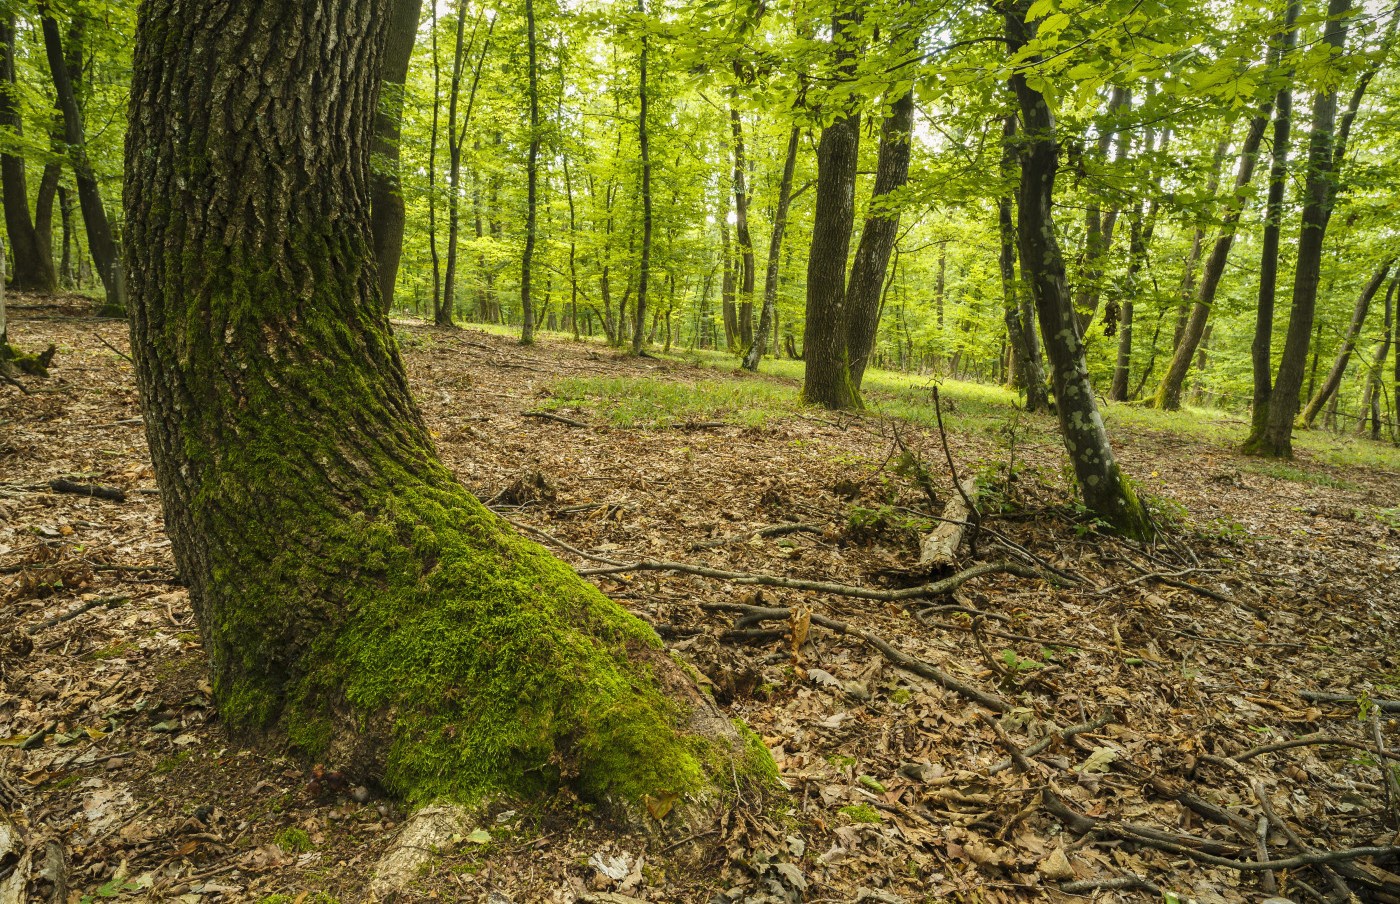 Những hiện tượng siêu nhiên trong khu rừng “Tam giác quỷ” nổi tiếng ở châu Âu - 8